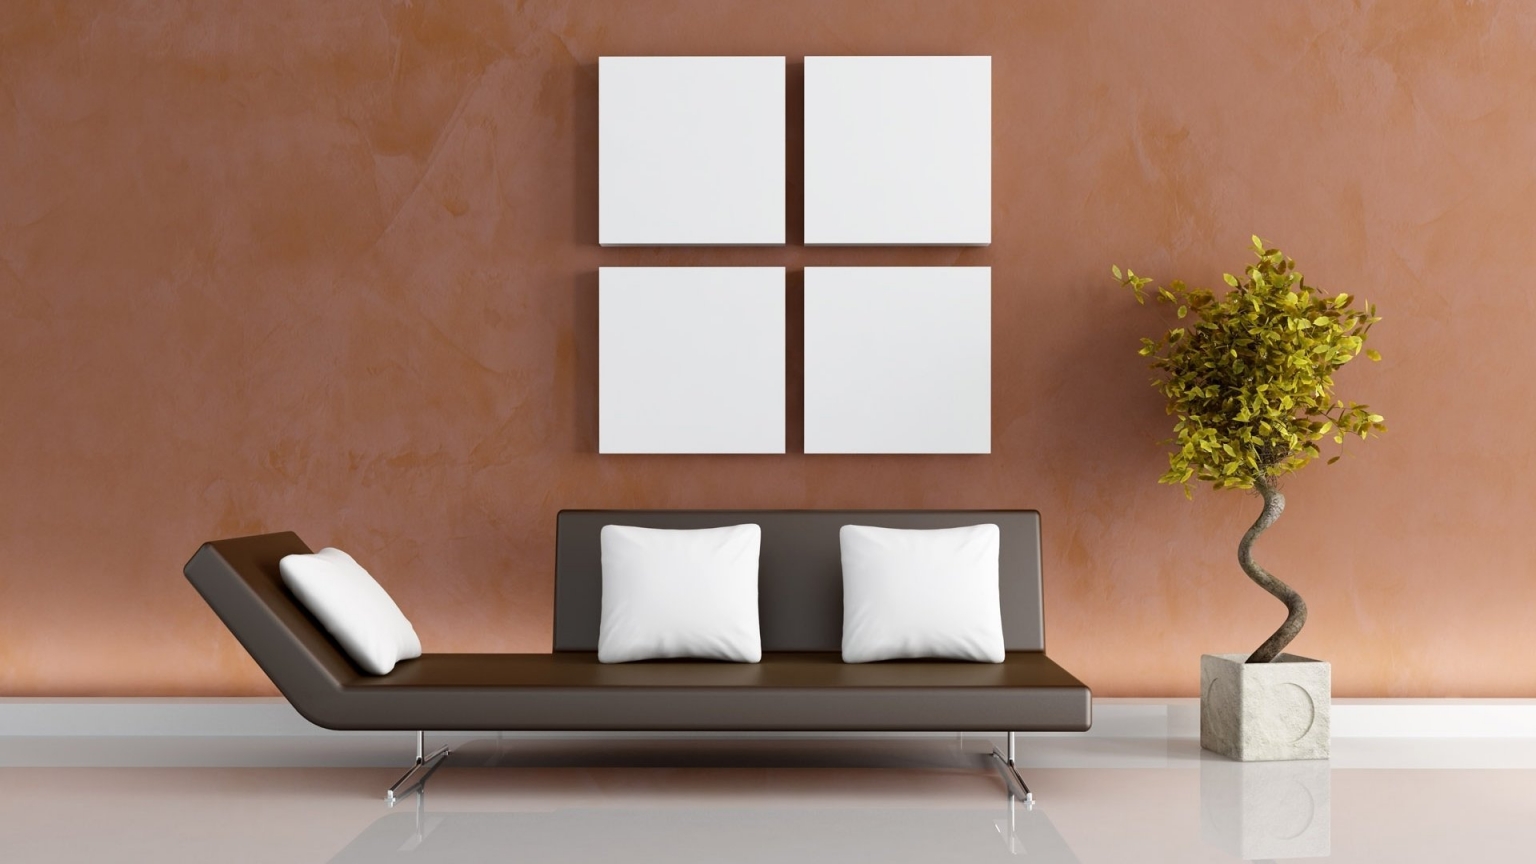 Modern living decor for 1536 x 864 HDTV resolution